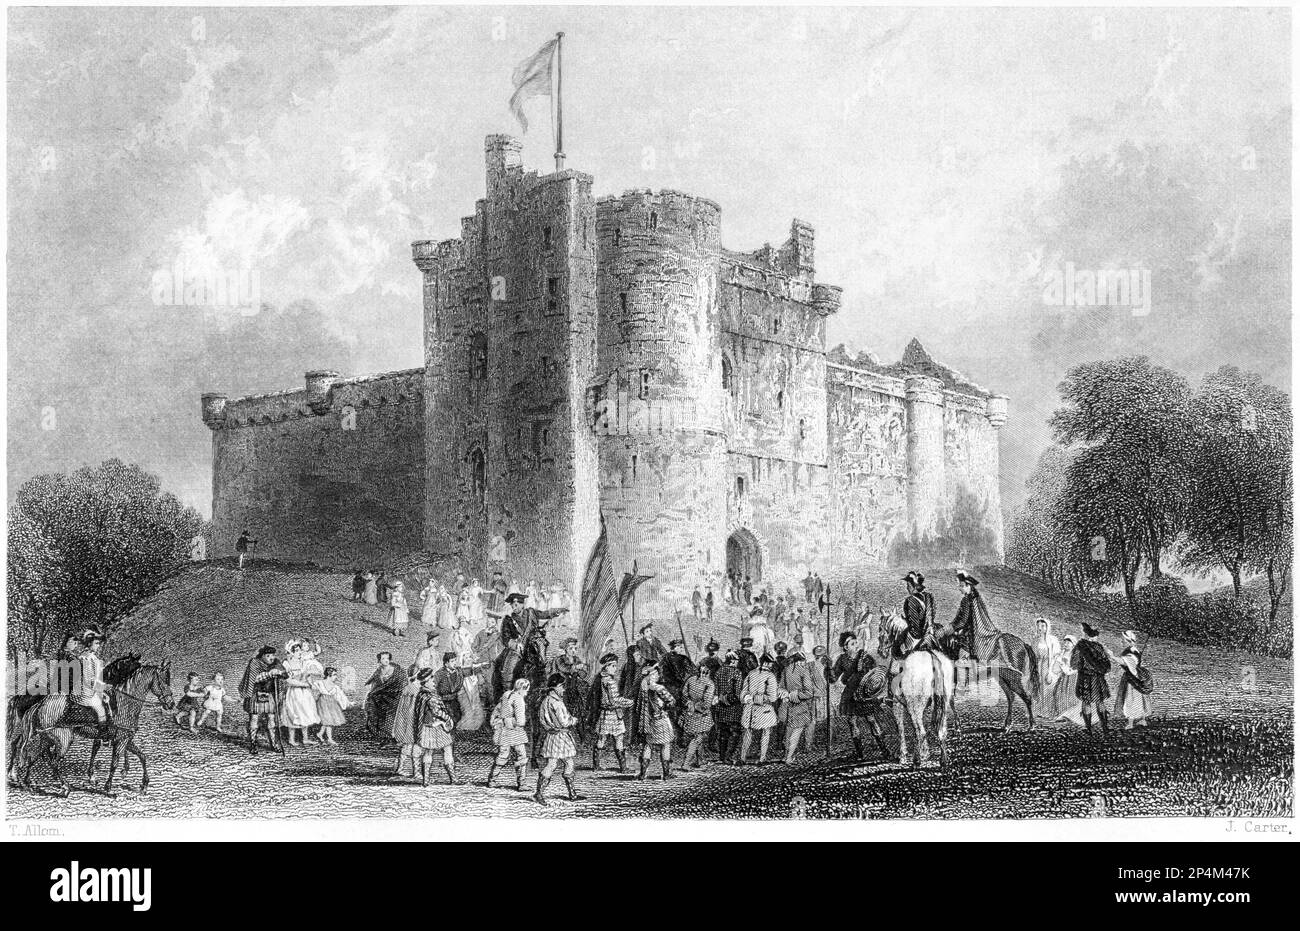 Eine Gravur des Schlosses von Doune (Prinz Charles Stuart. Vernichtung seiner Gefangenen nach der Schlacht von Falkirk 1746 n. Chr. aus einem Buch von 1840. Stockfoto